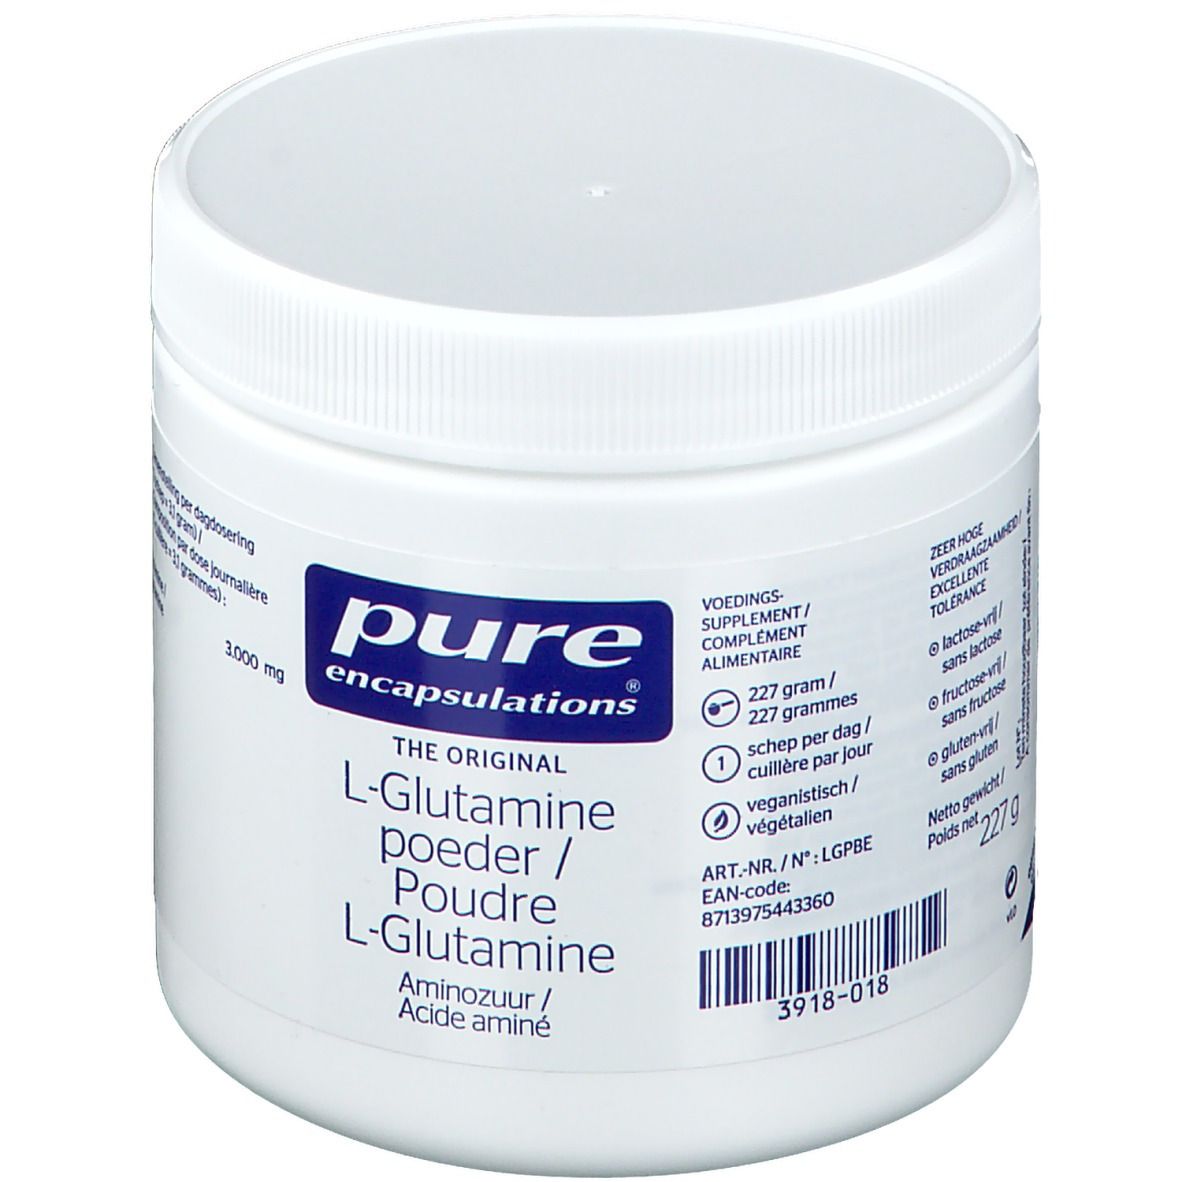 Pure Encapsulations® L-Glutamin Pulver